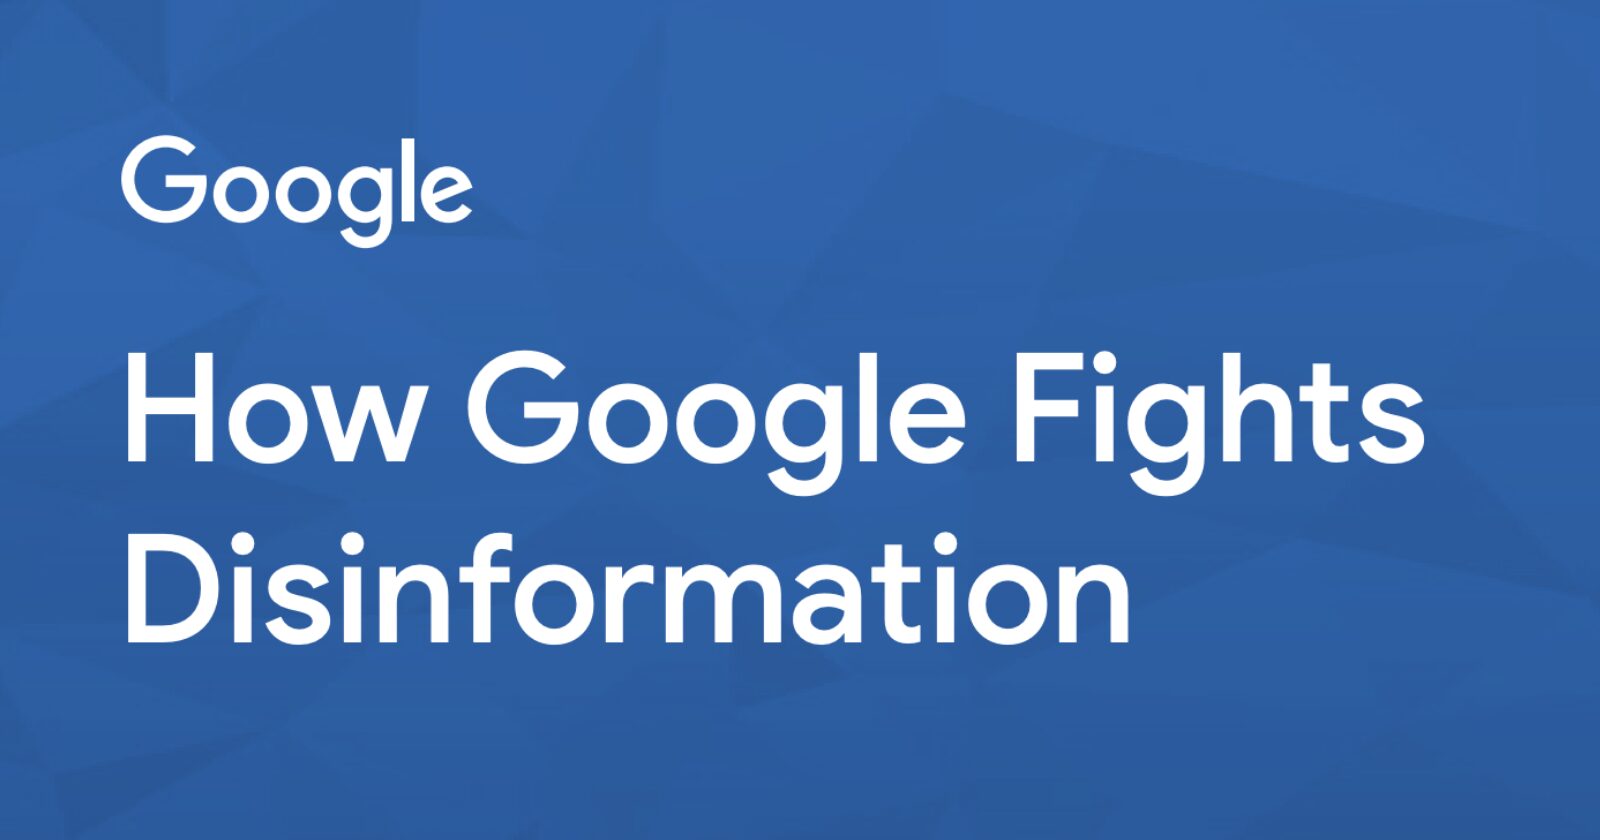 Google explique comment éliminer la désinformation dans les résultats de recherche